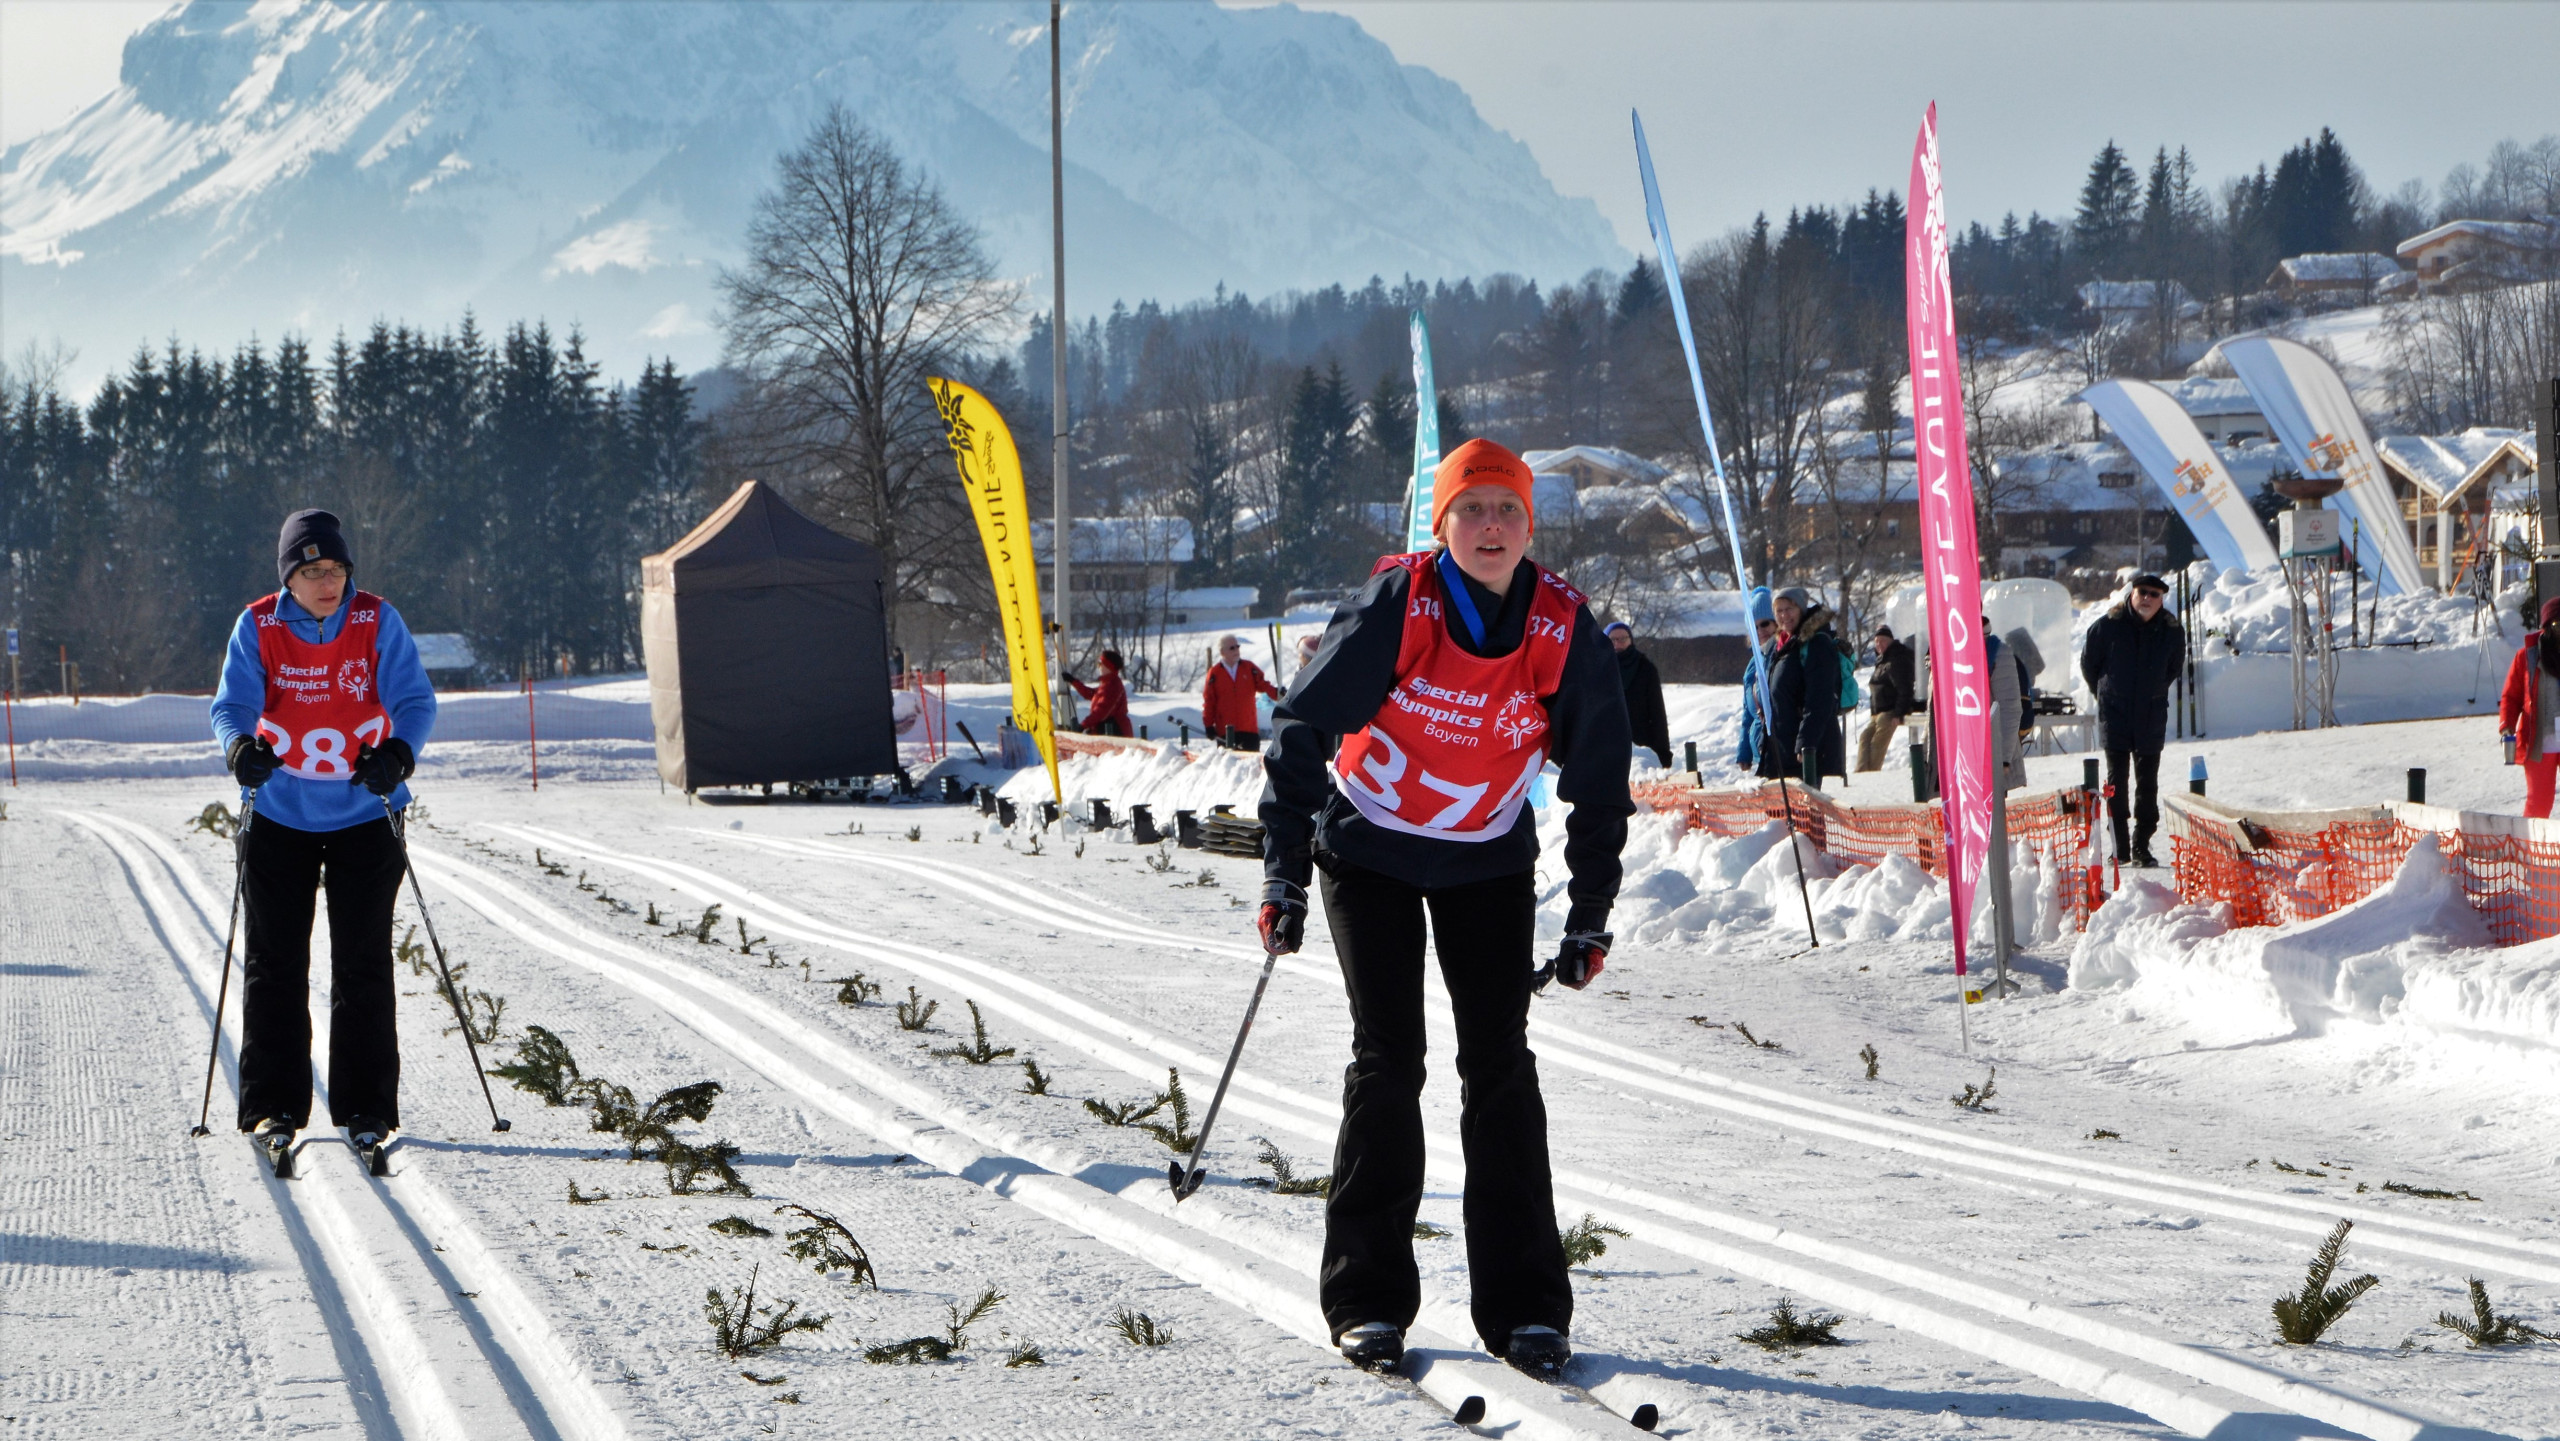 Special Olympics winterspiele Bayern